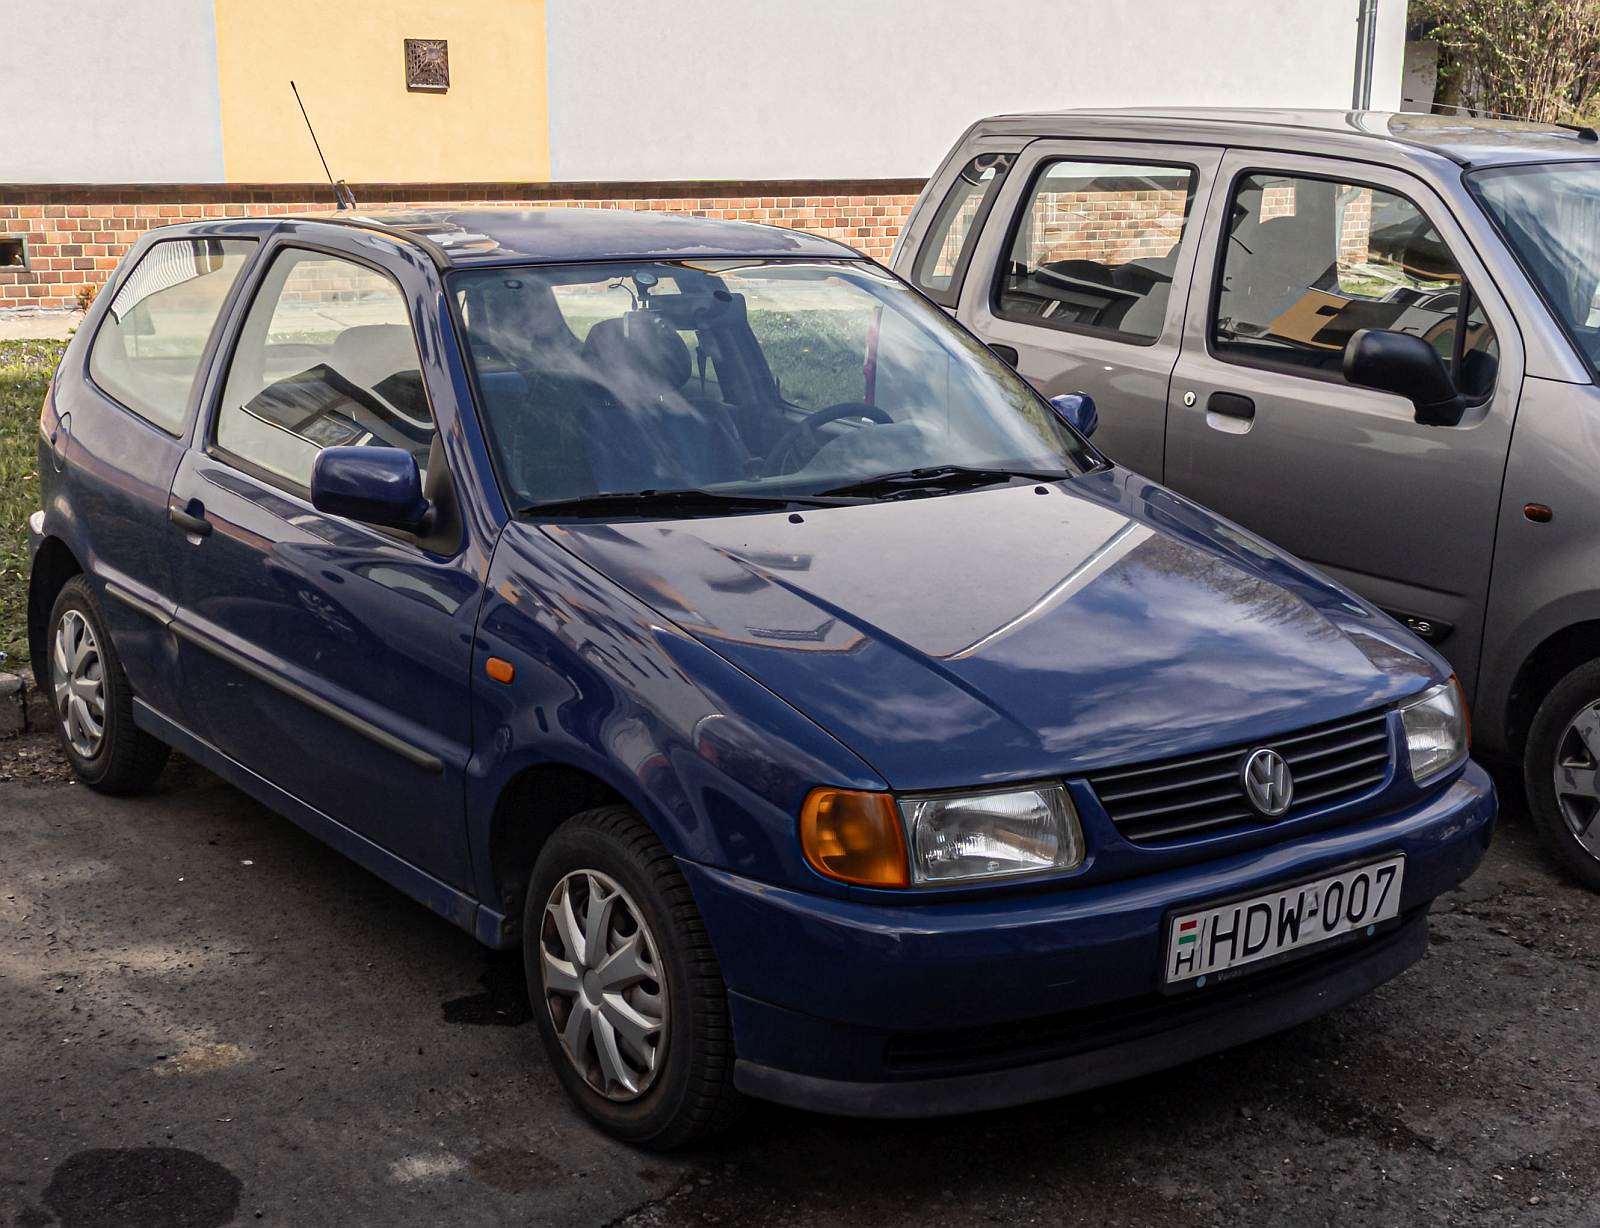 VW Polo Mk3 in dunkelblau, gesehen in 04.2022.